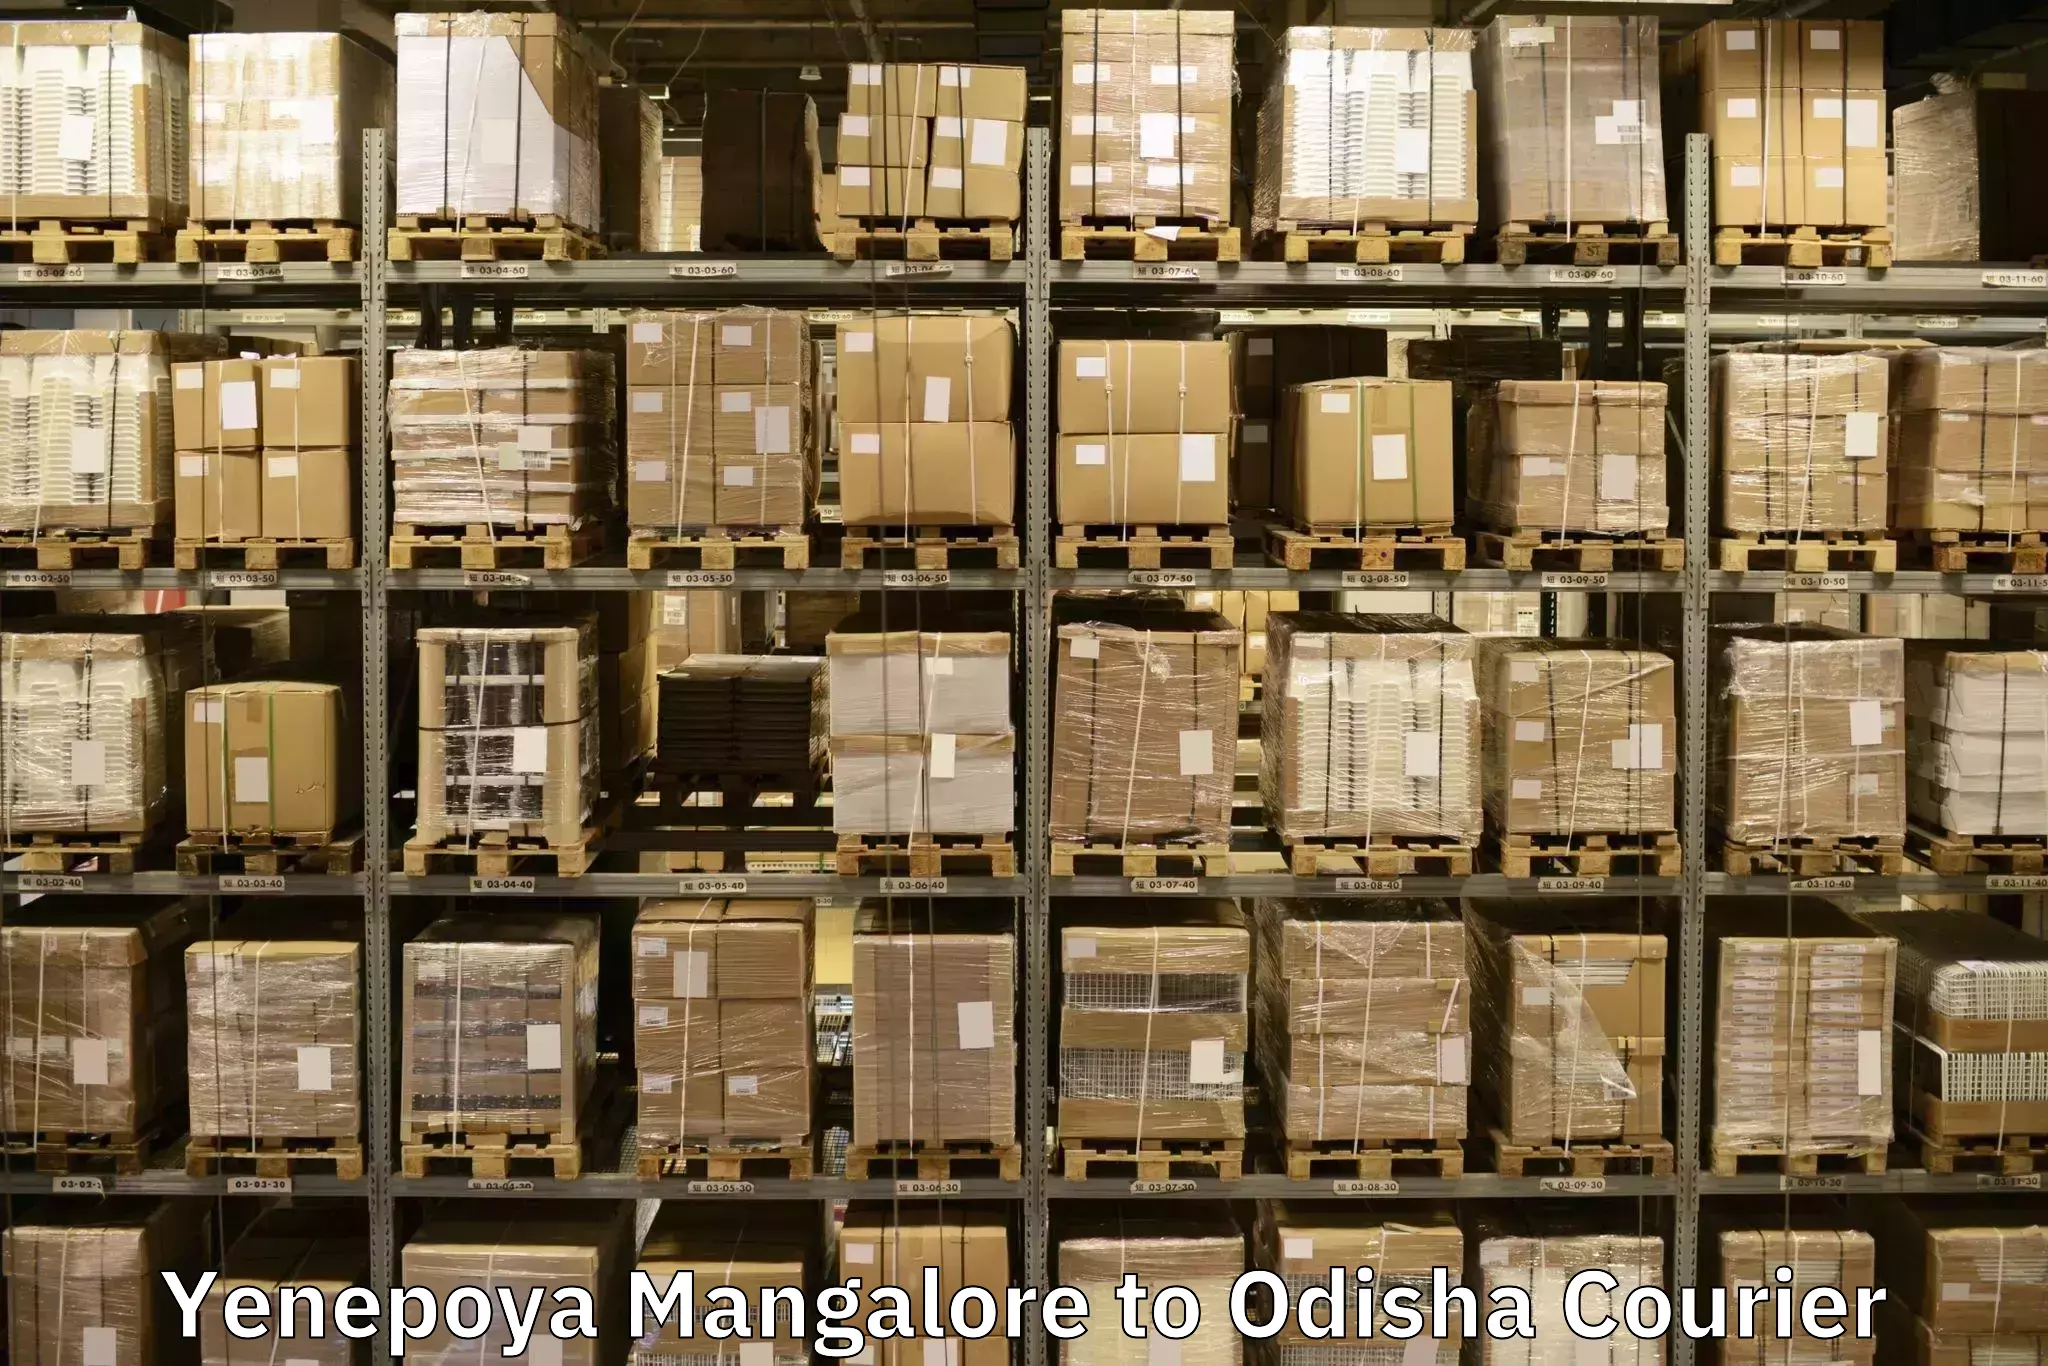 Quality moving company Yenepoya Mangalore to Rairangpur